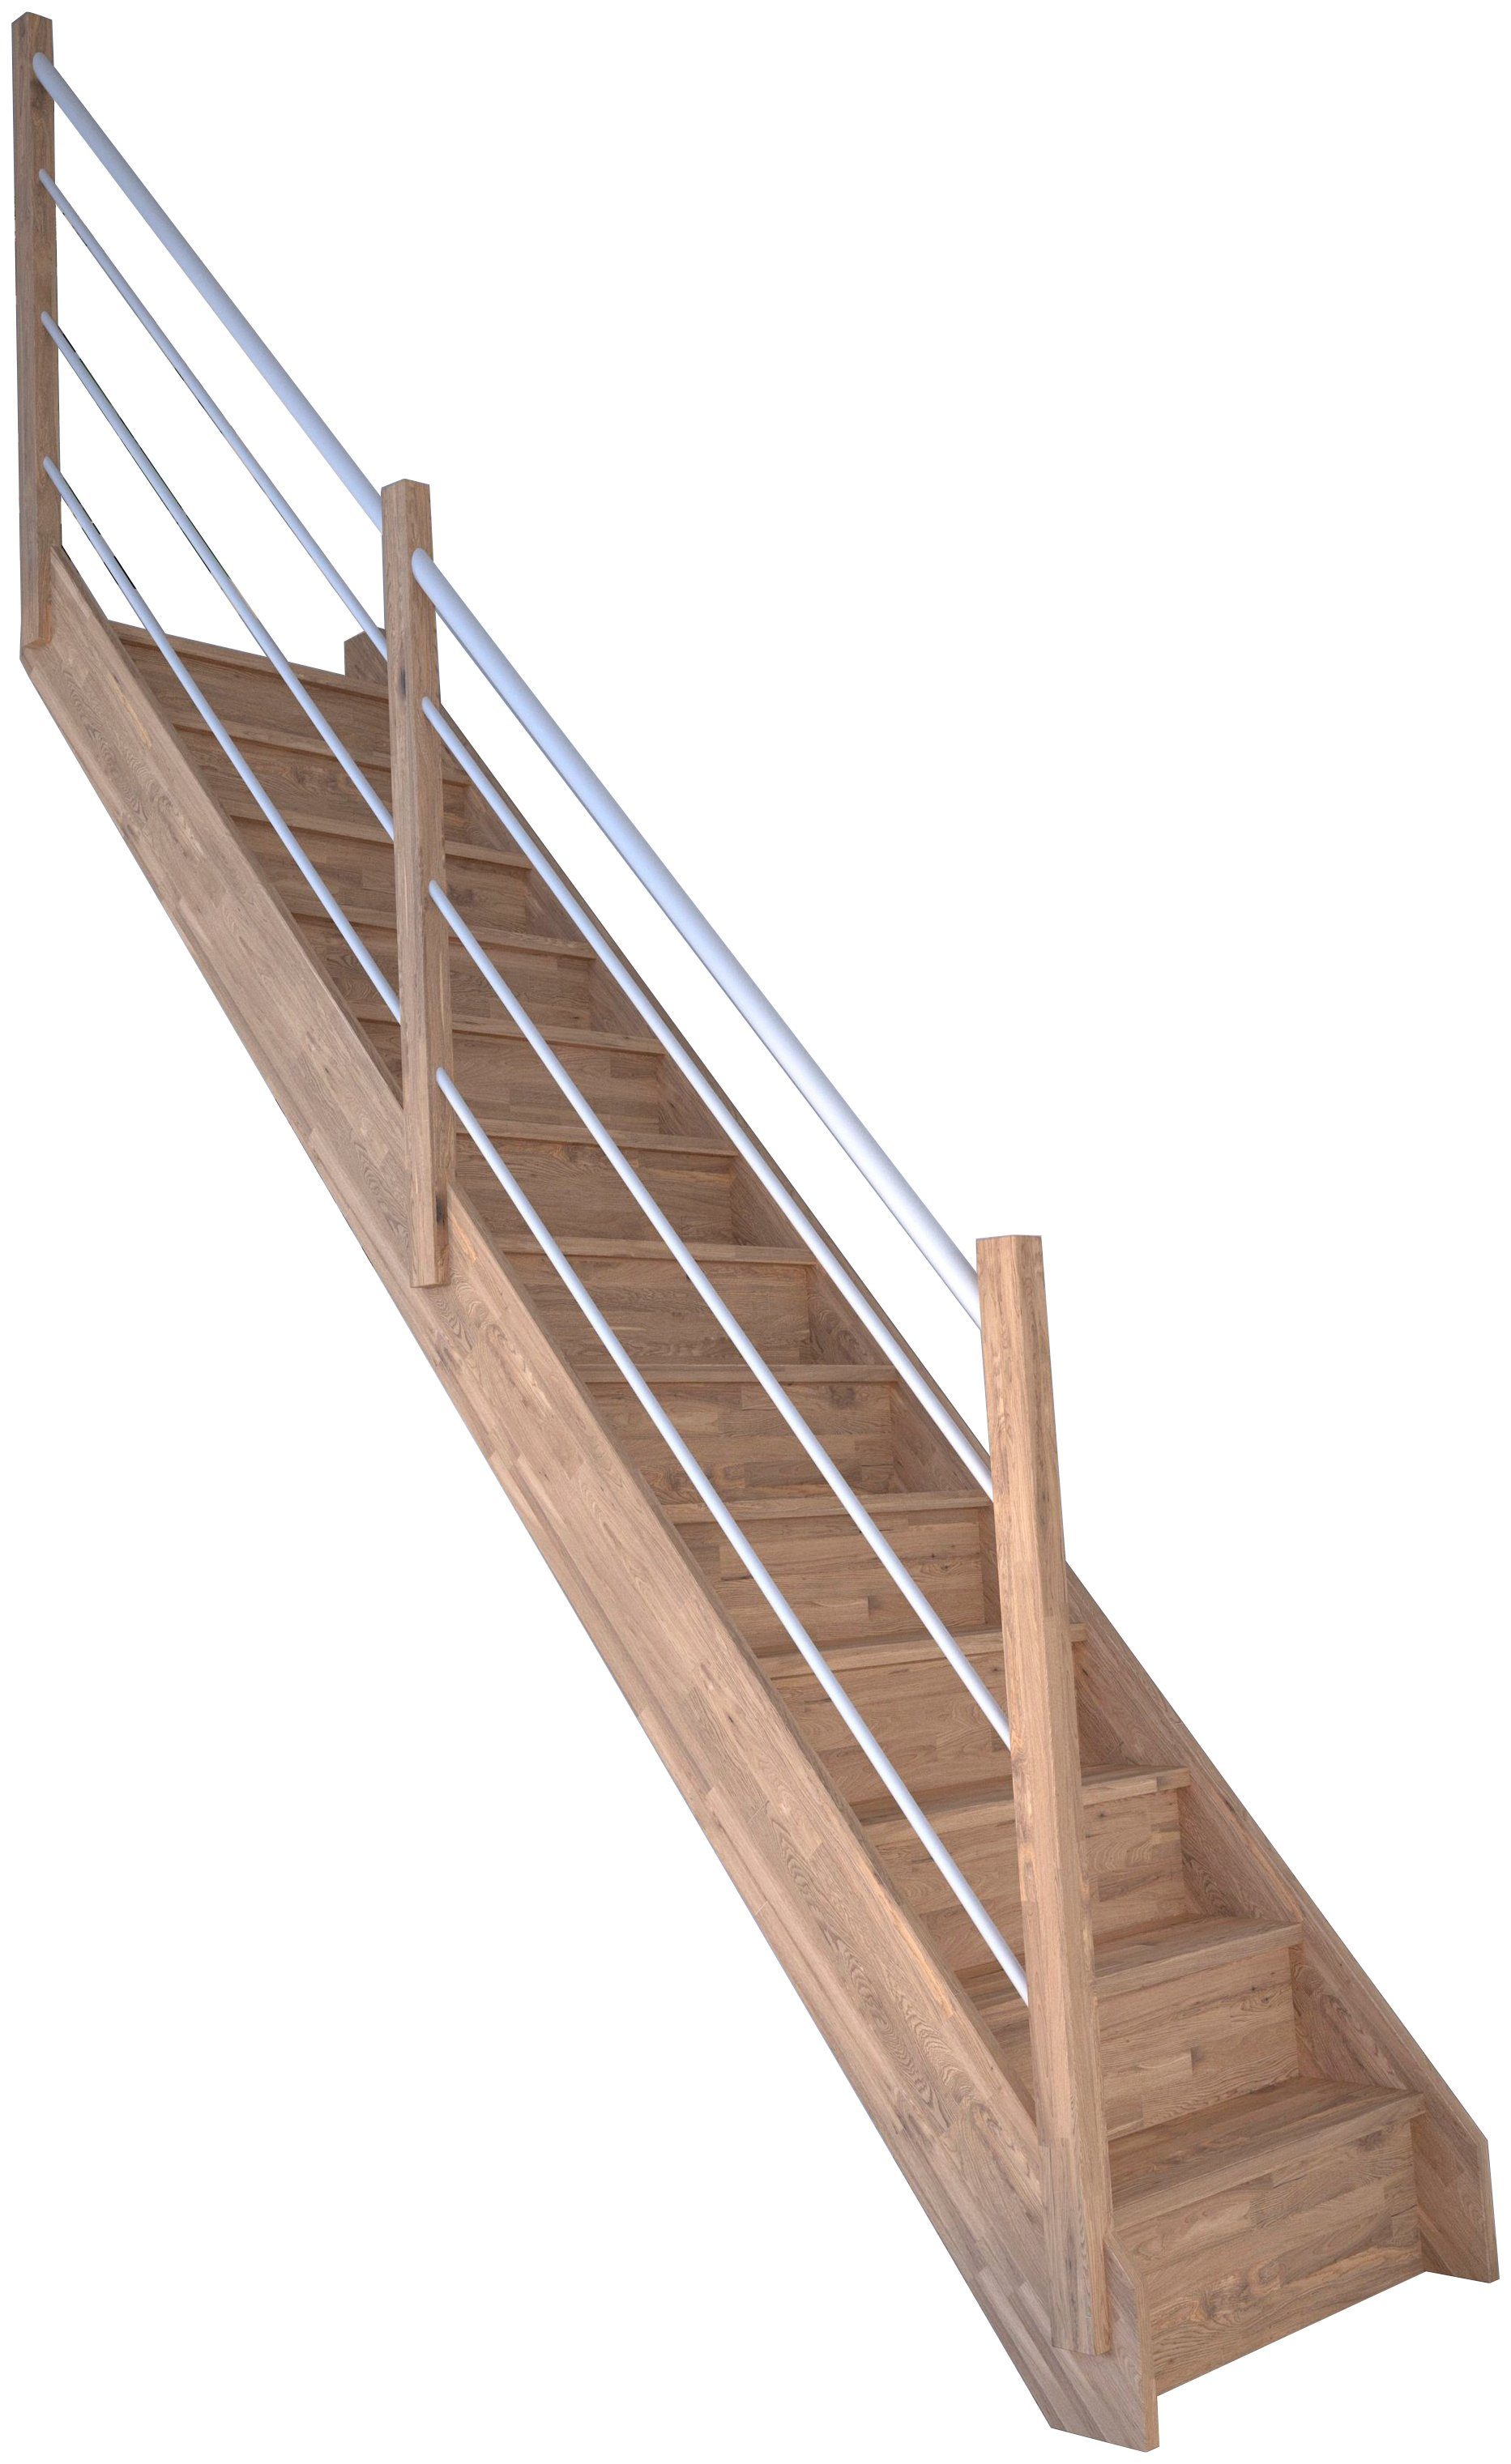 Starwood Raumspartreppe Massivholz Rhodos, Holz-Edelstahl Weiß Links, für Geschosshöhen bis 300 cm, Stufen geschlossen, Durchgehende Wangenteile